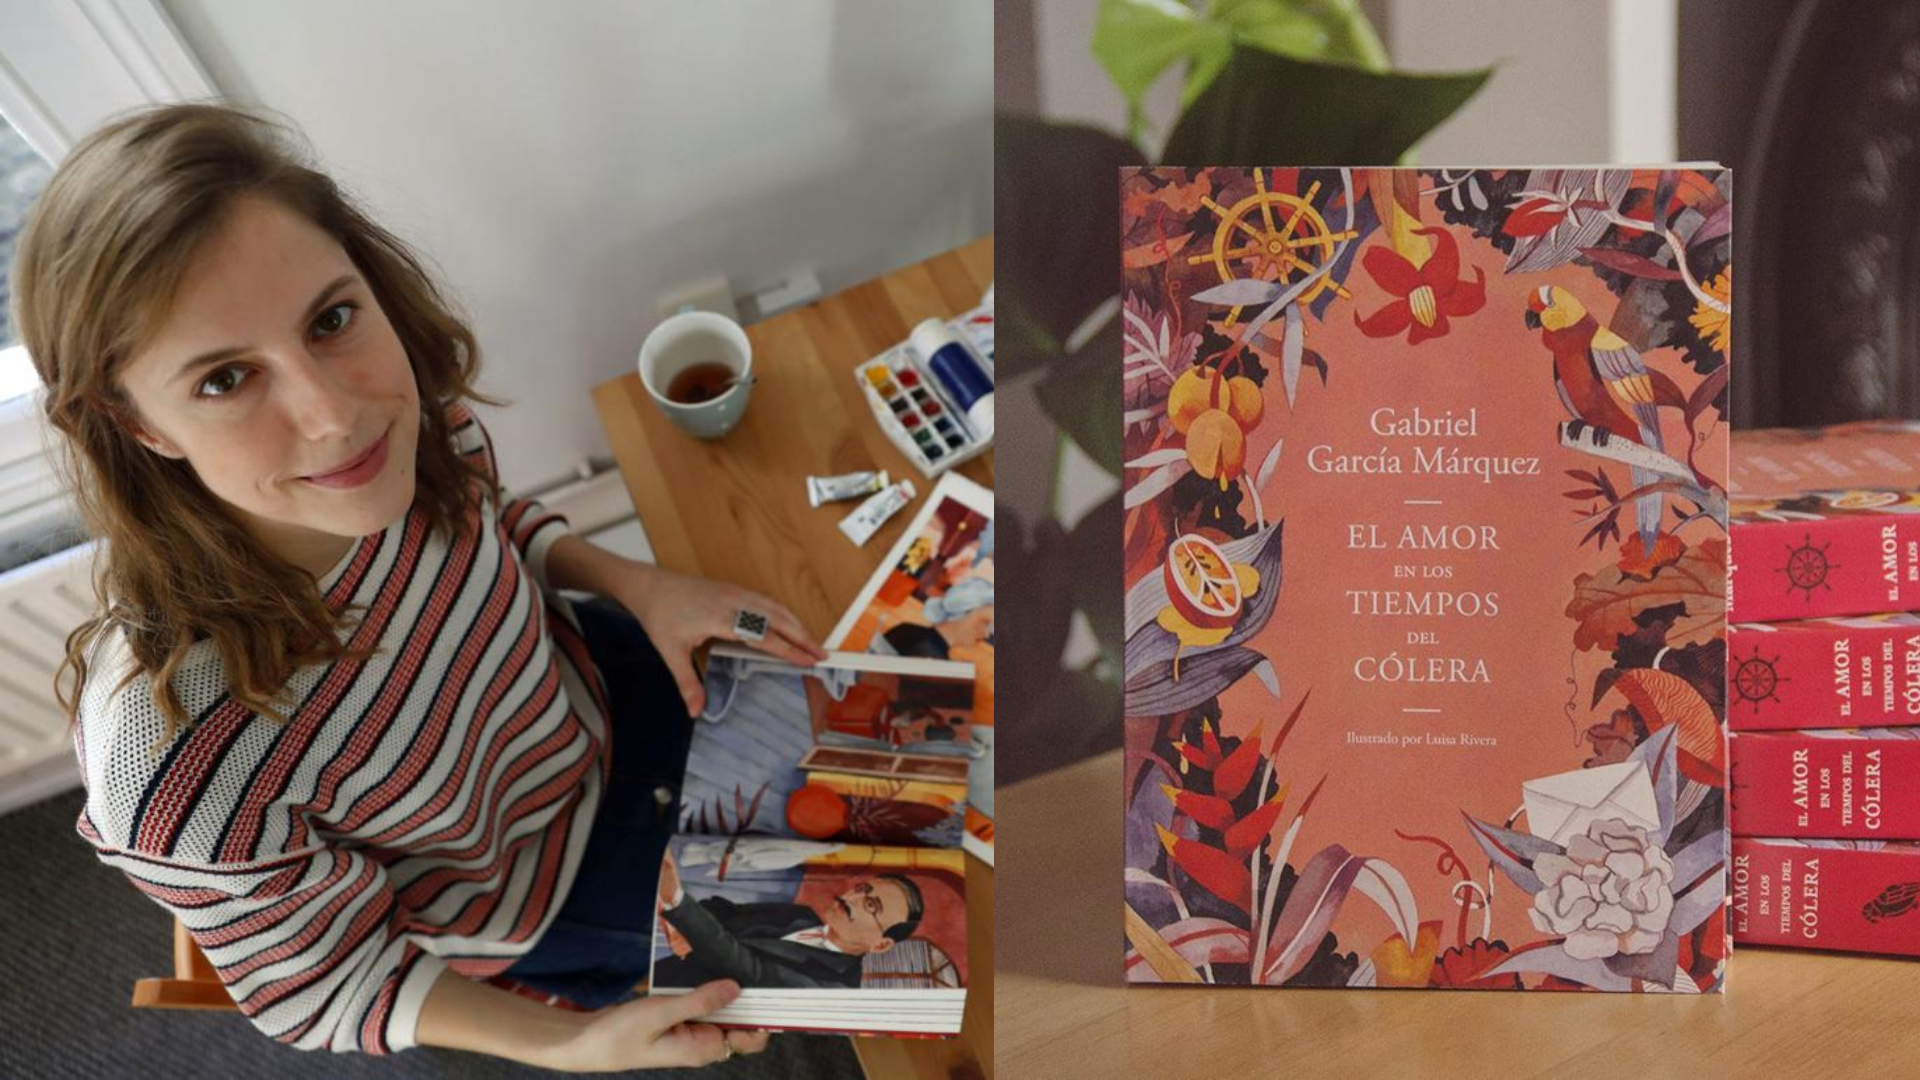 La ilustradora chilena Luisa Rivera,honra de nuevo a Gabriel García Márquez...